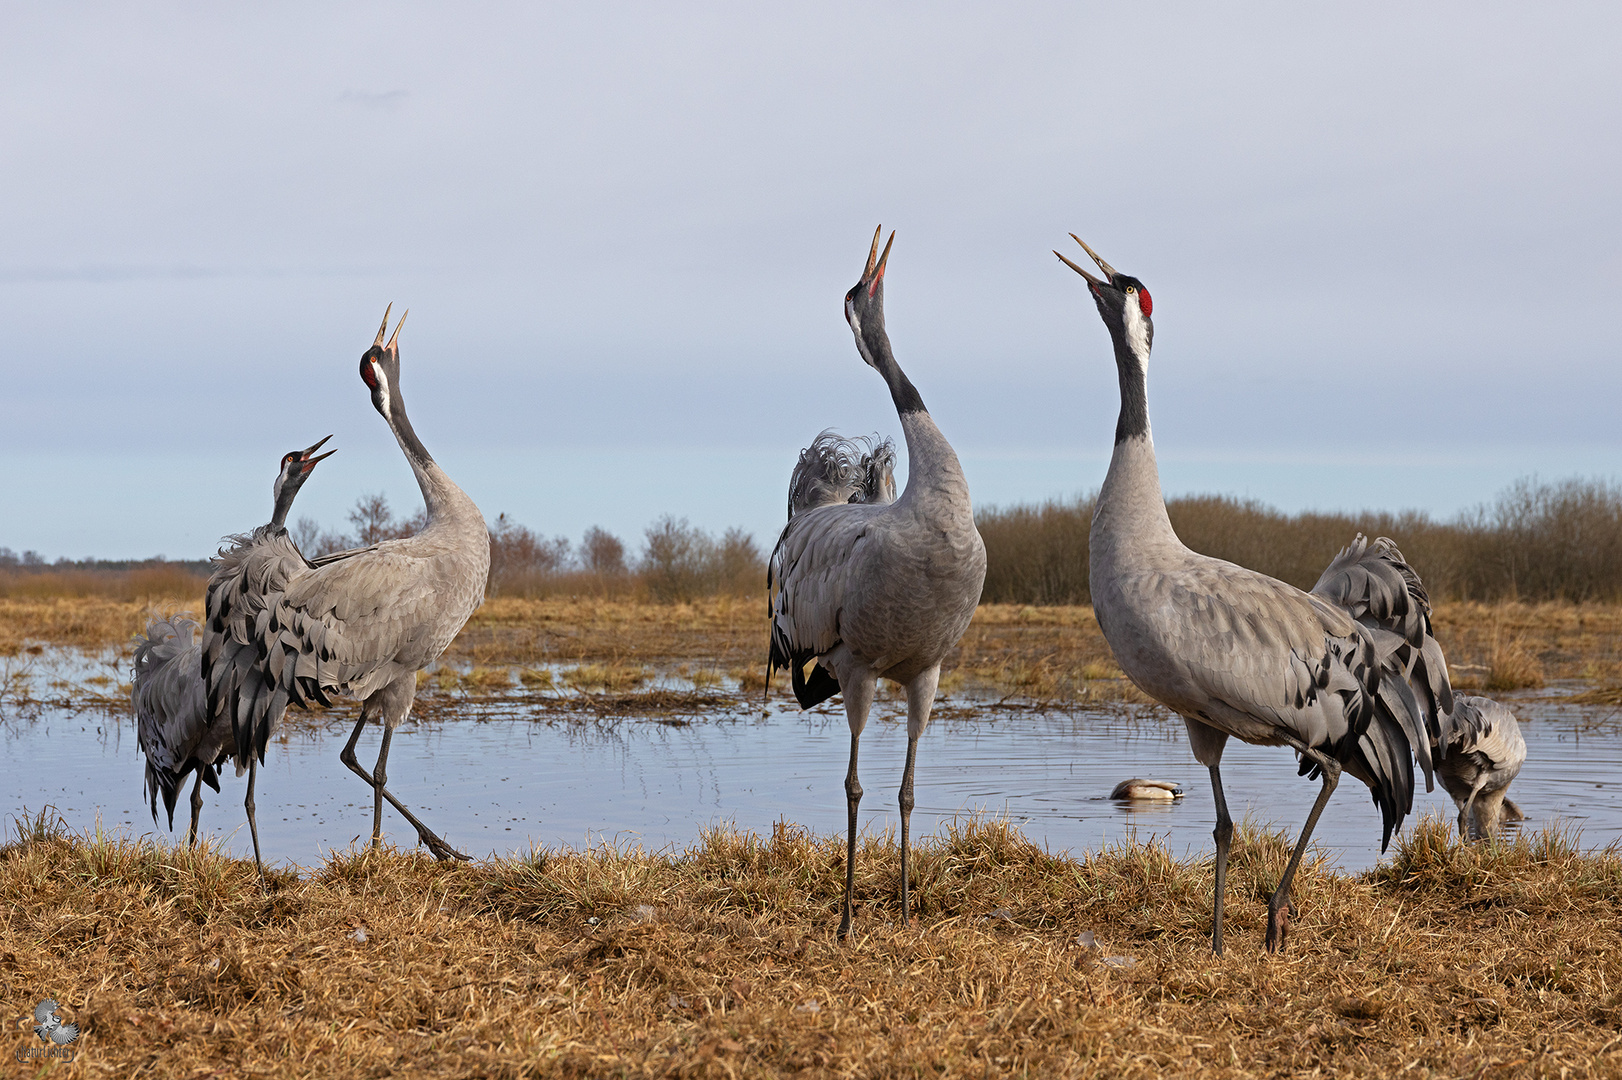 Common crane (Grus grus), Grauer Kranich, Hornborgasee, Schweden, Sweden